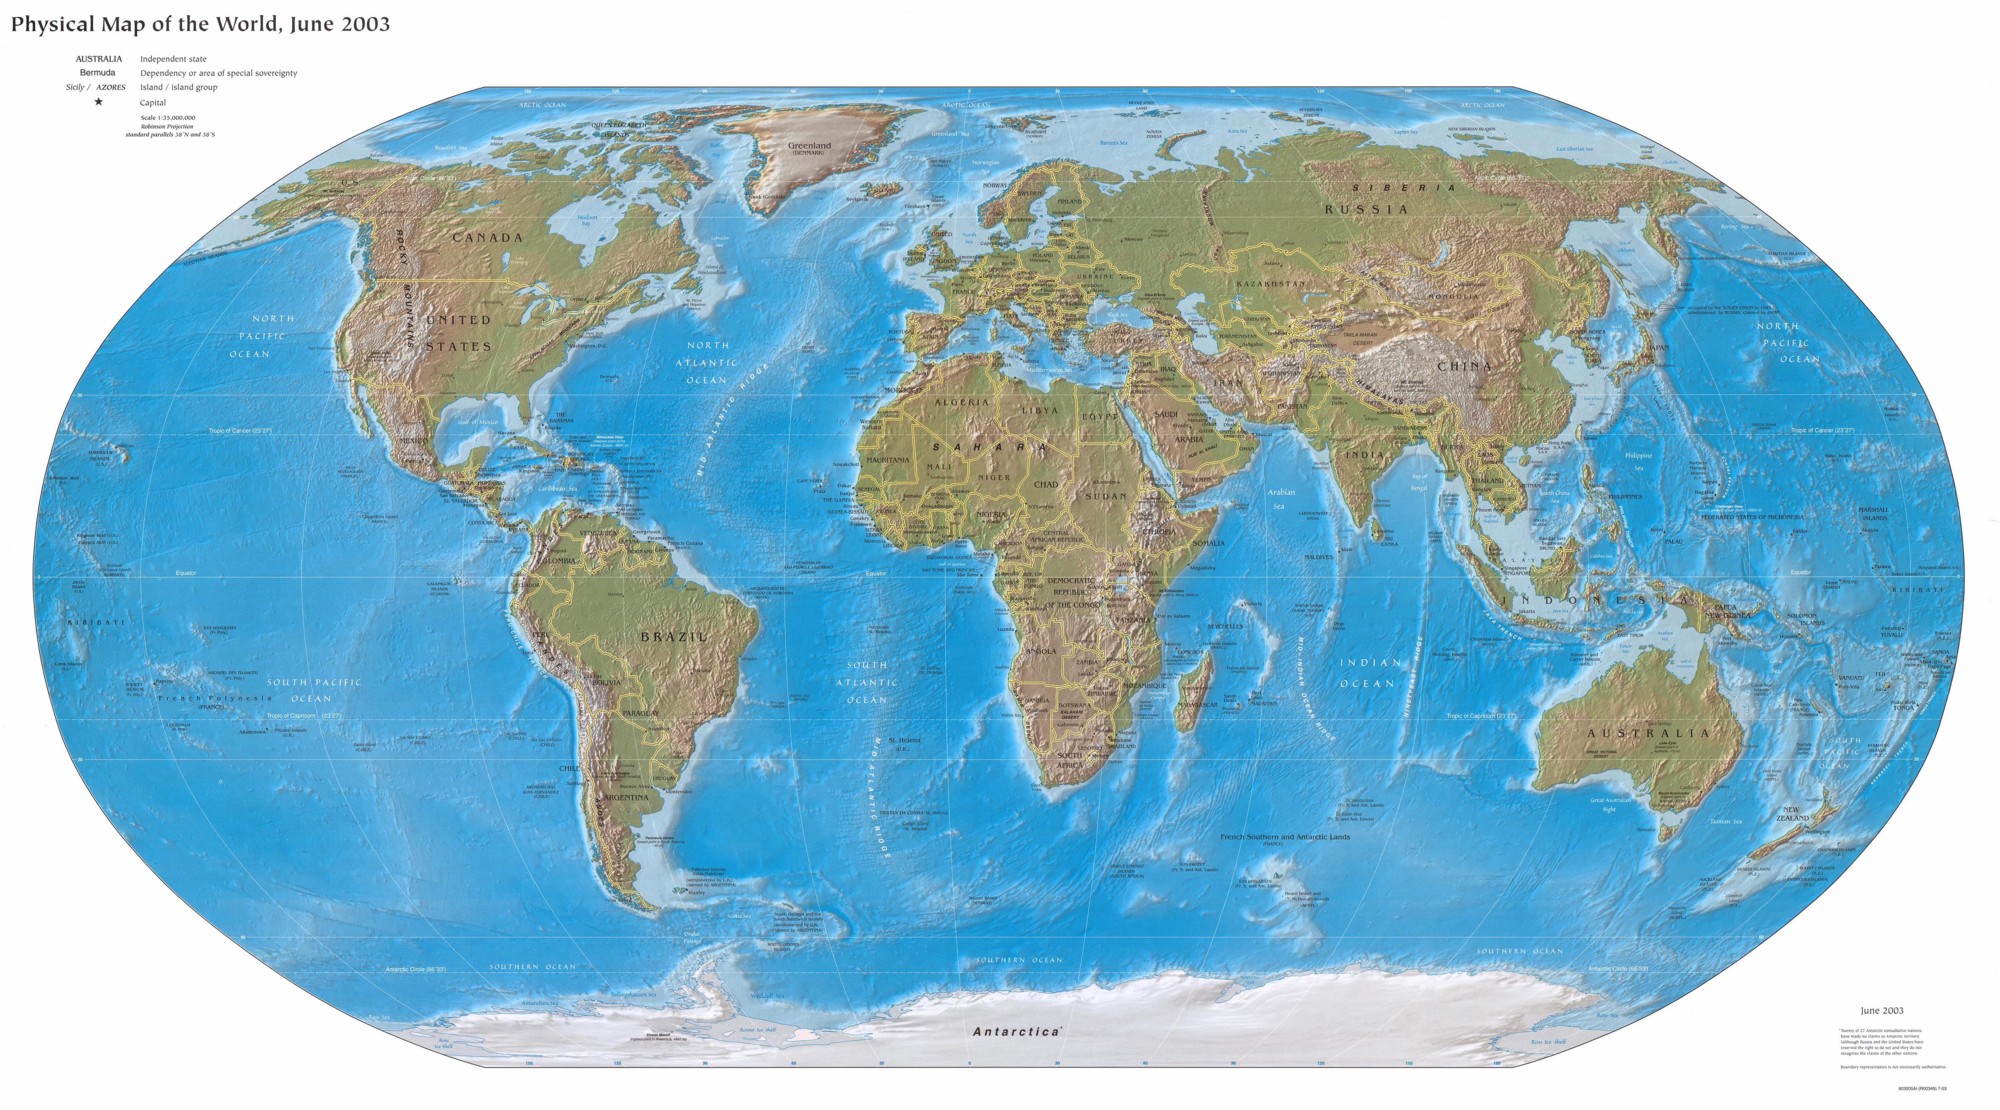 föld térkép tengerekkel Vilag Domborzati Terkep Europa Terkep föld térkép tengerekkel